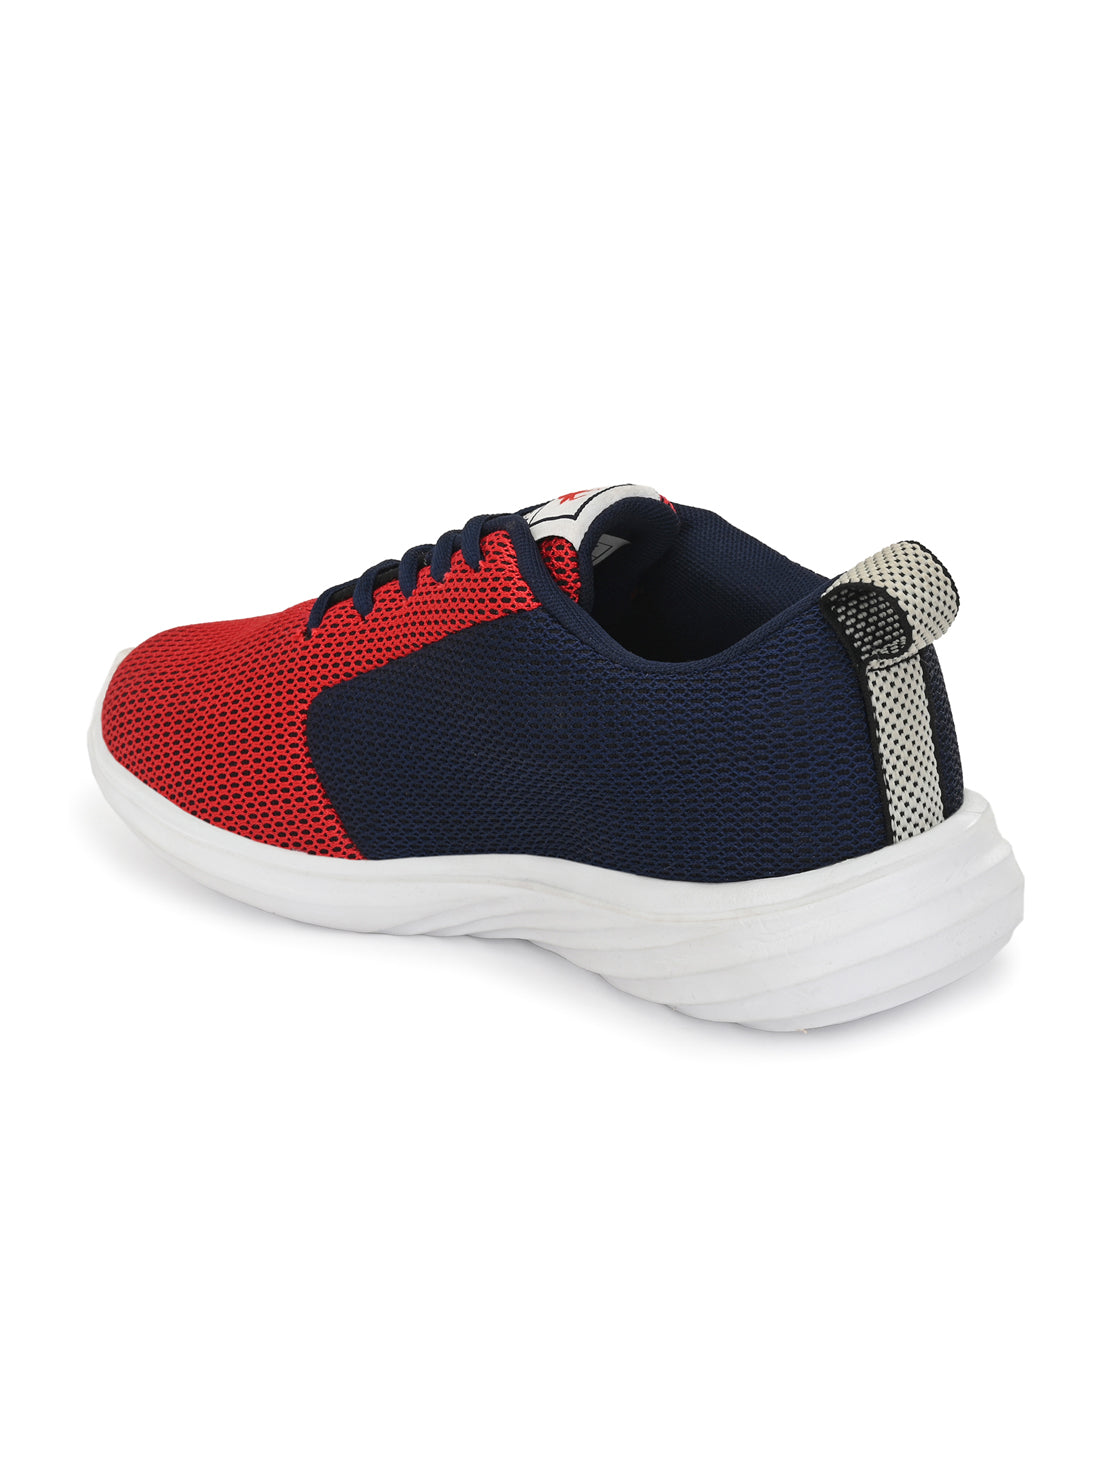 Hirolas® Men's Grey Mesh Running/Walking/Gym Lace Up Sneaker Sport Shoes (HRL2013BLR)